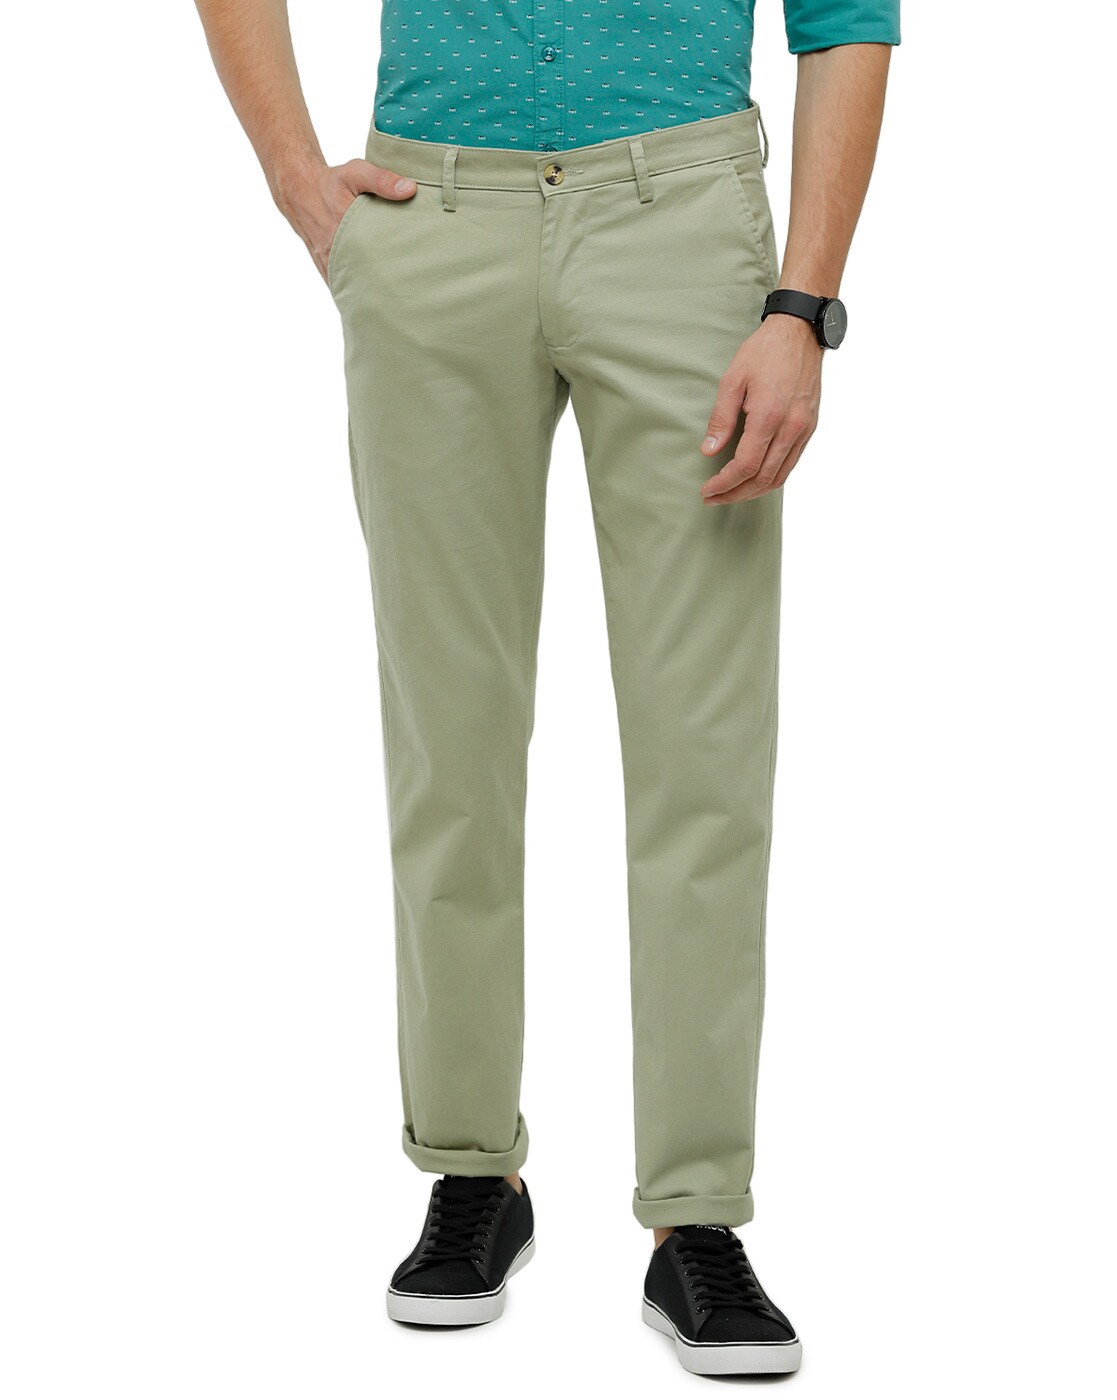 Montorsop Tailored Pants - Dark Green | Suit Pants | Politix